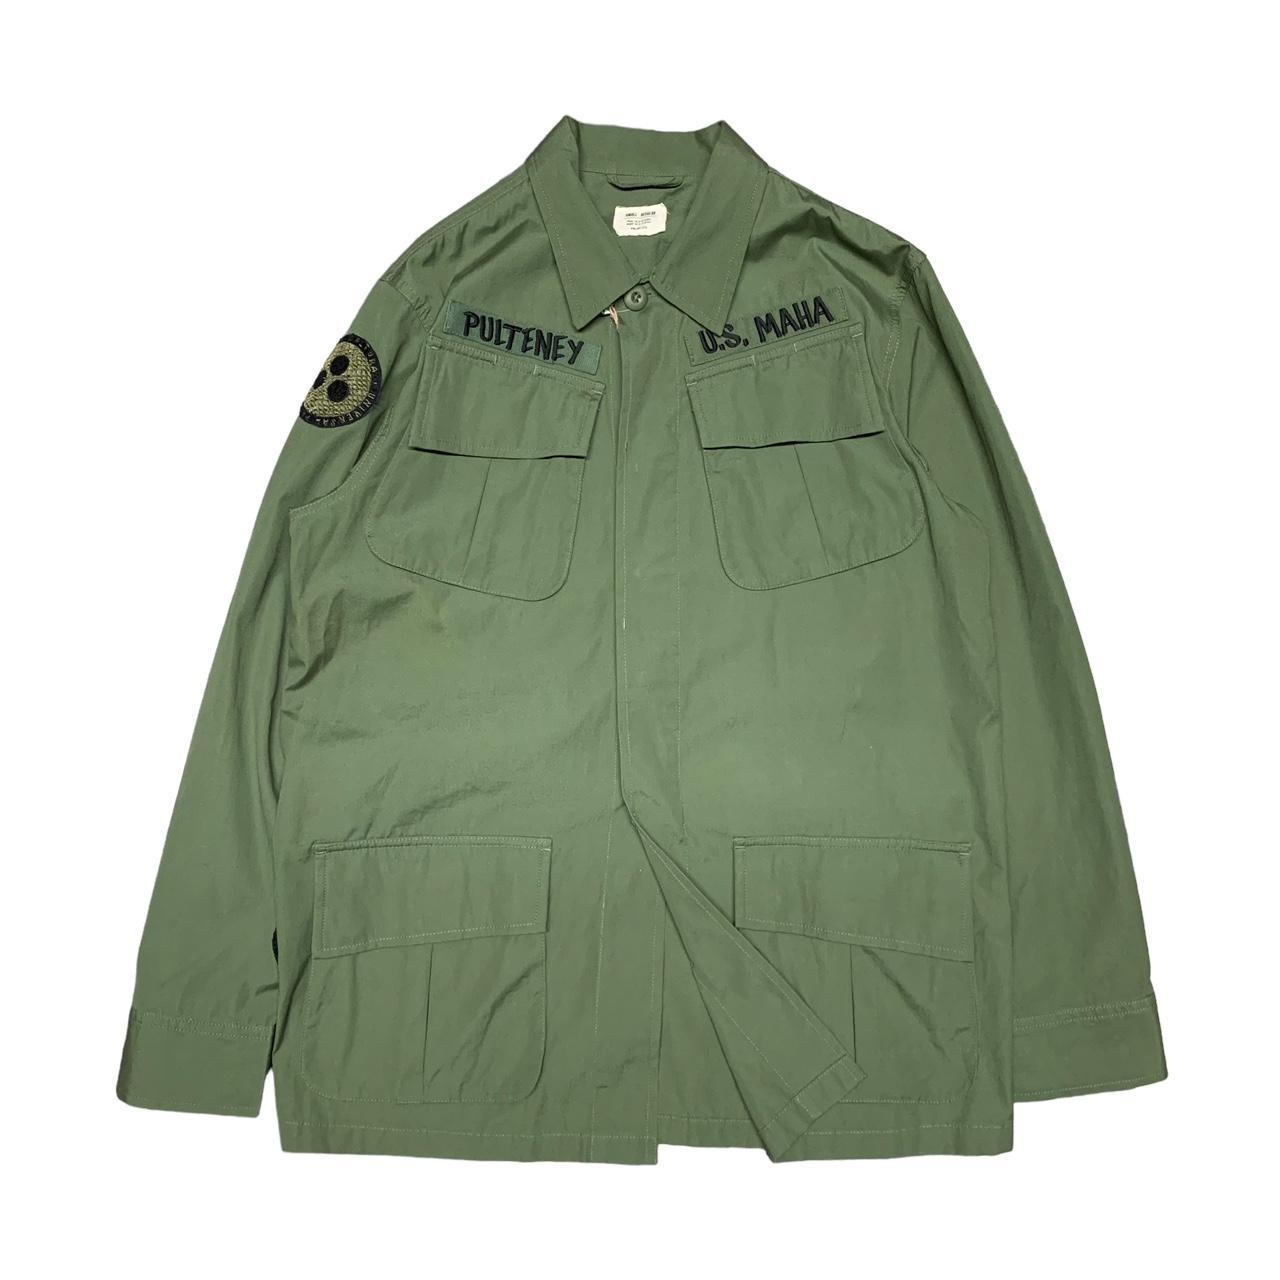 Maharishi OG 107 “Upcycled Peace” Jungle Jacket.